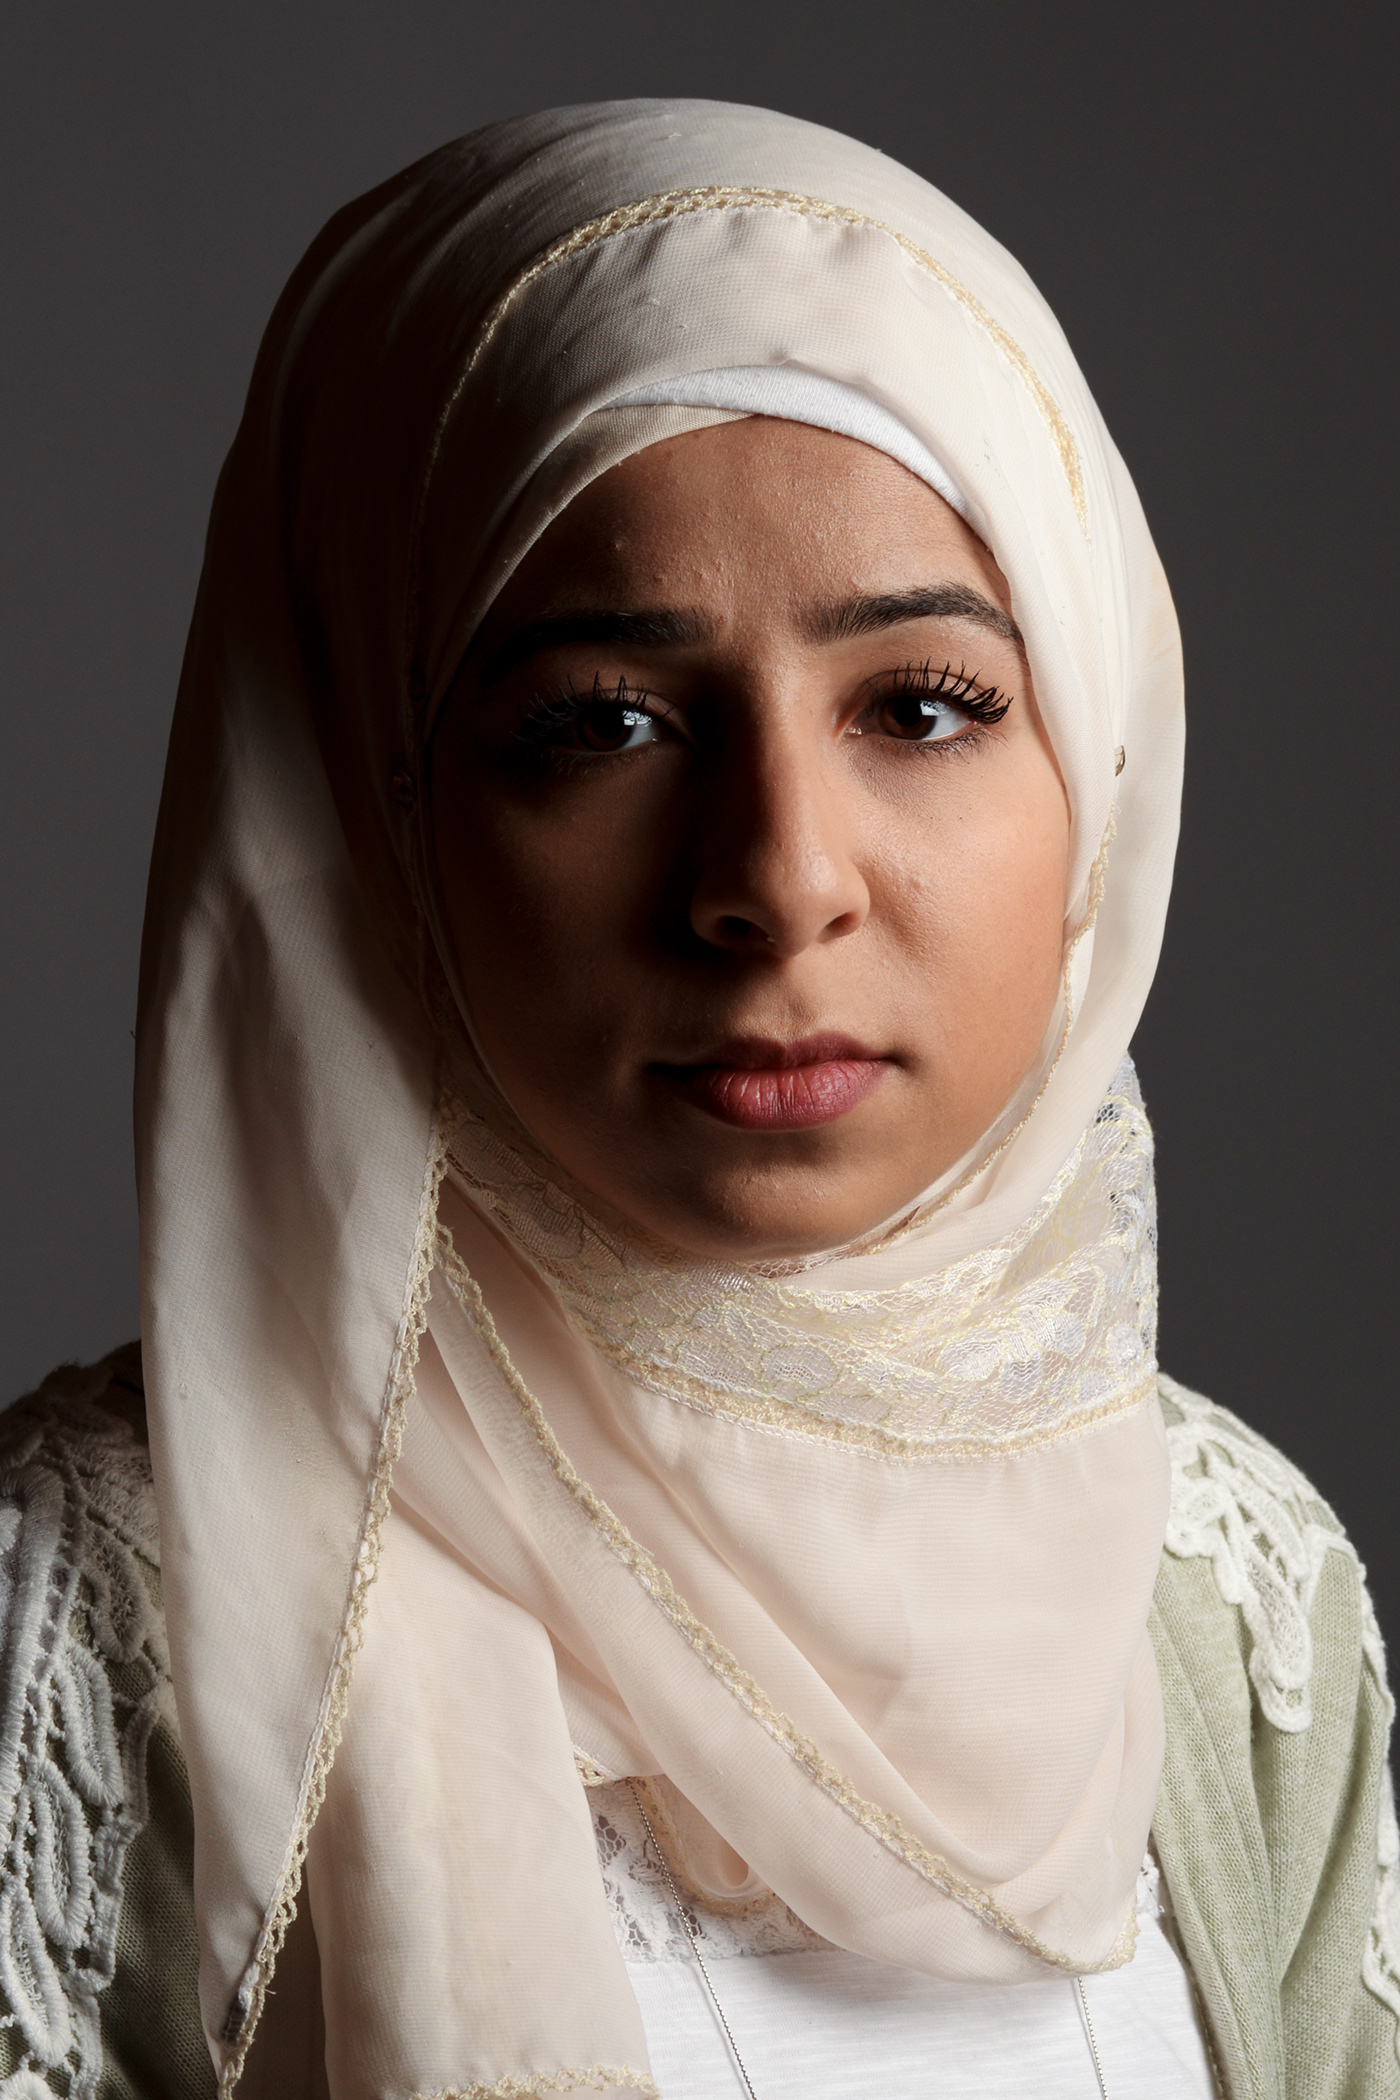 donne editorial hijab model musulmane progetto fotografia RITRATTO ritratto femminile ritratto fotografico velo